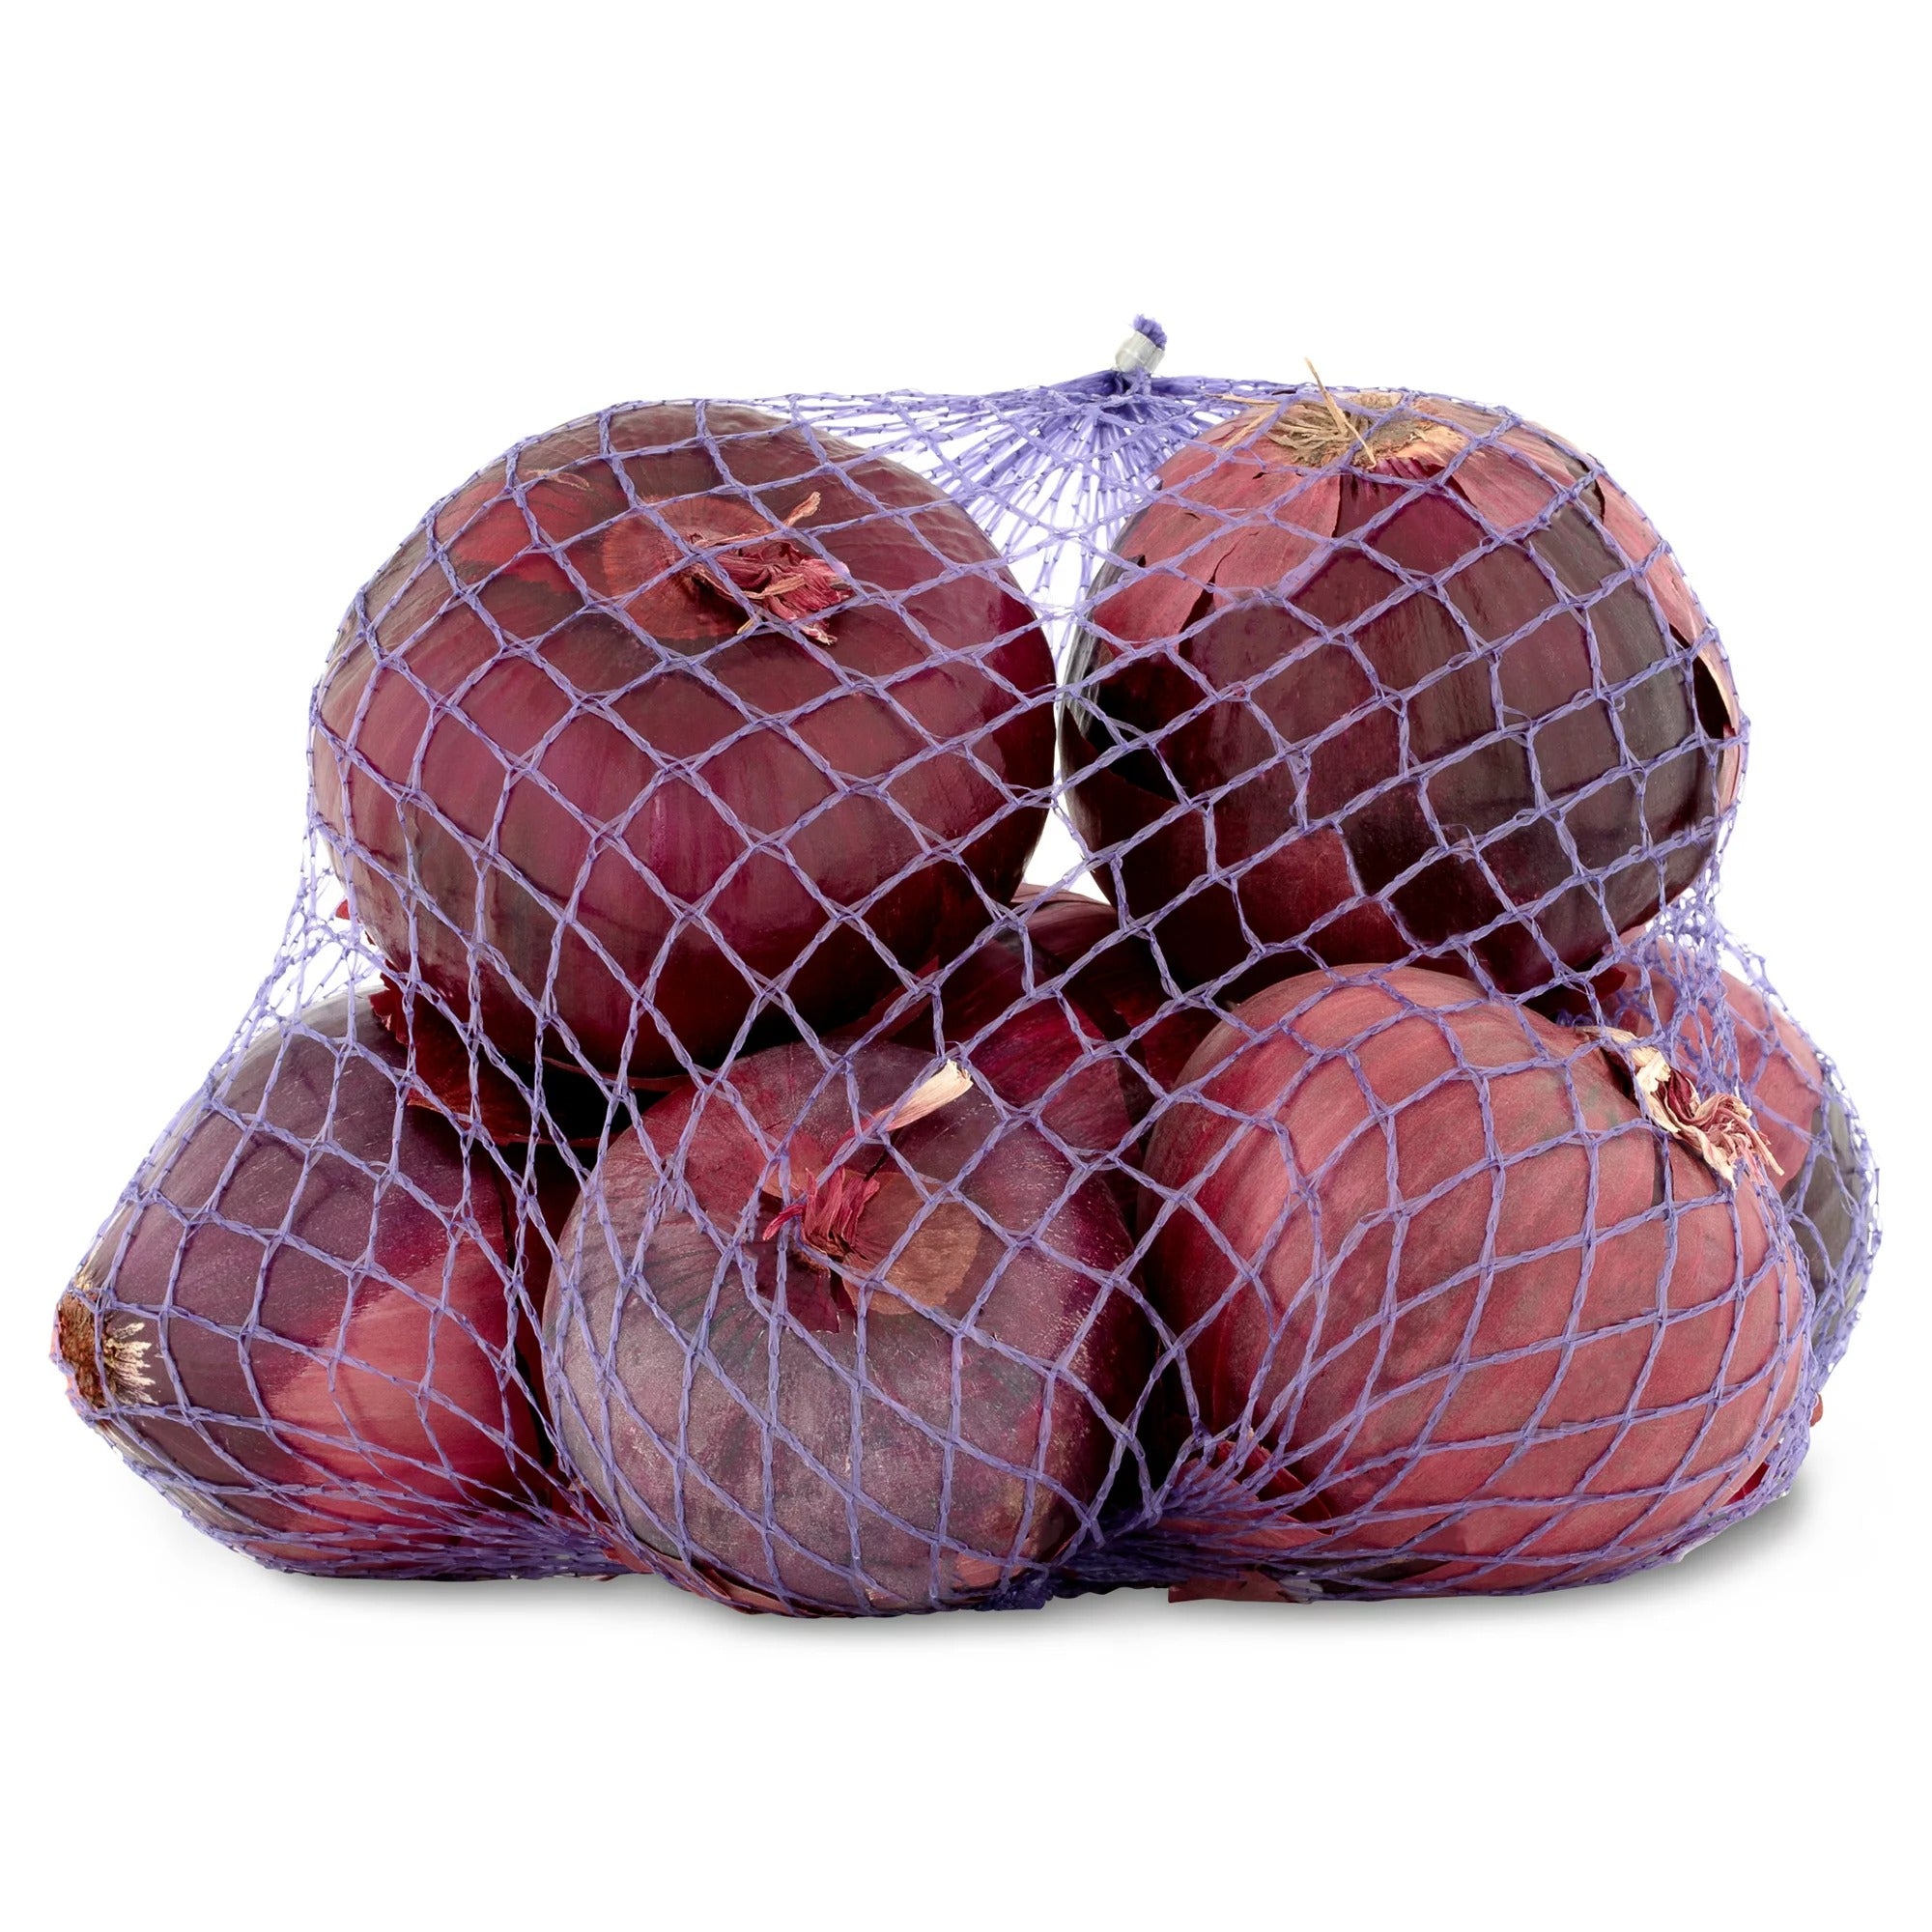 Red Onion Bag, 3 lb